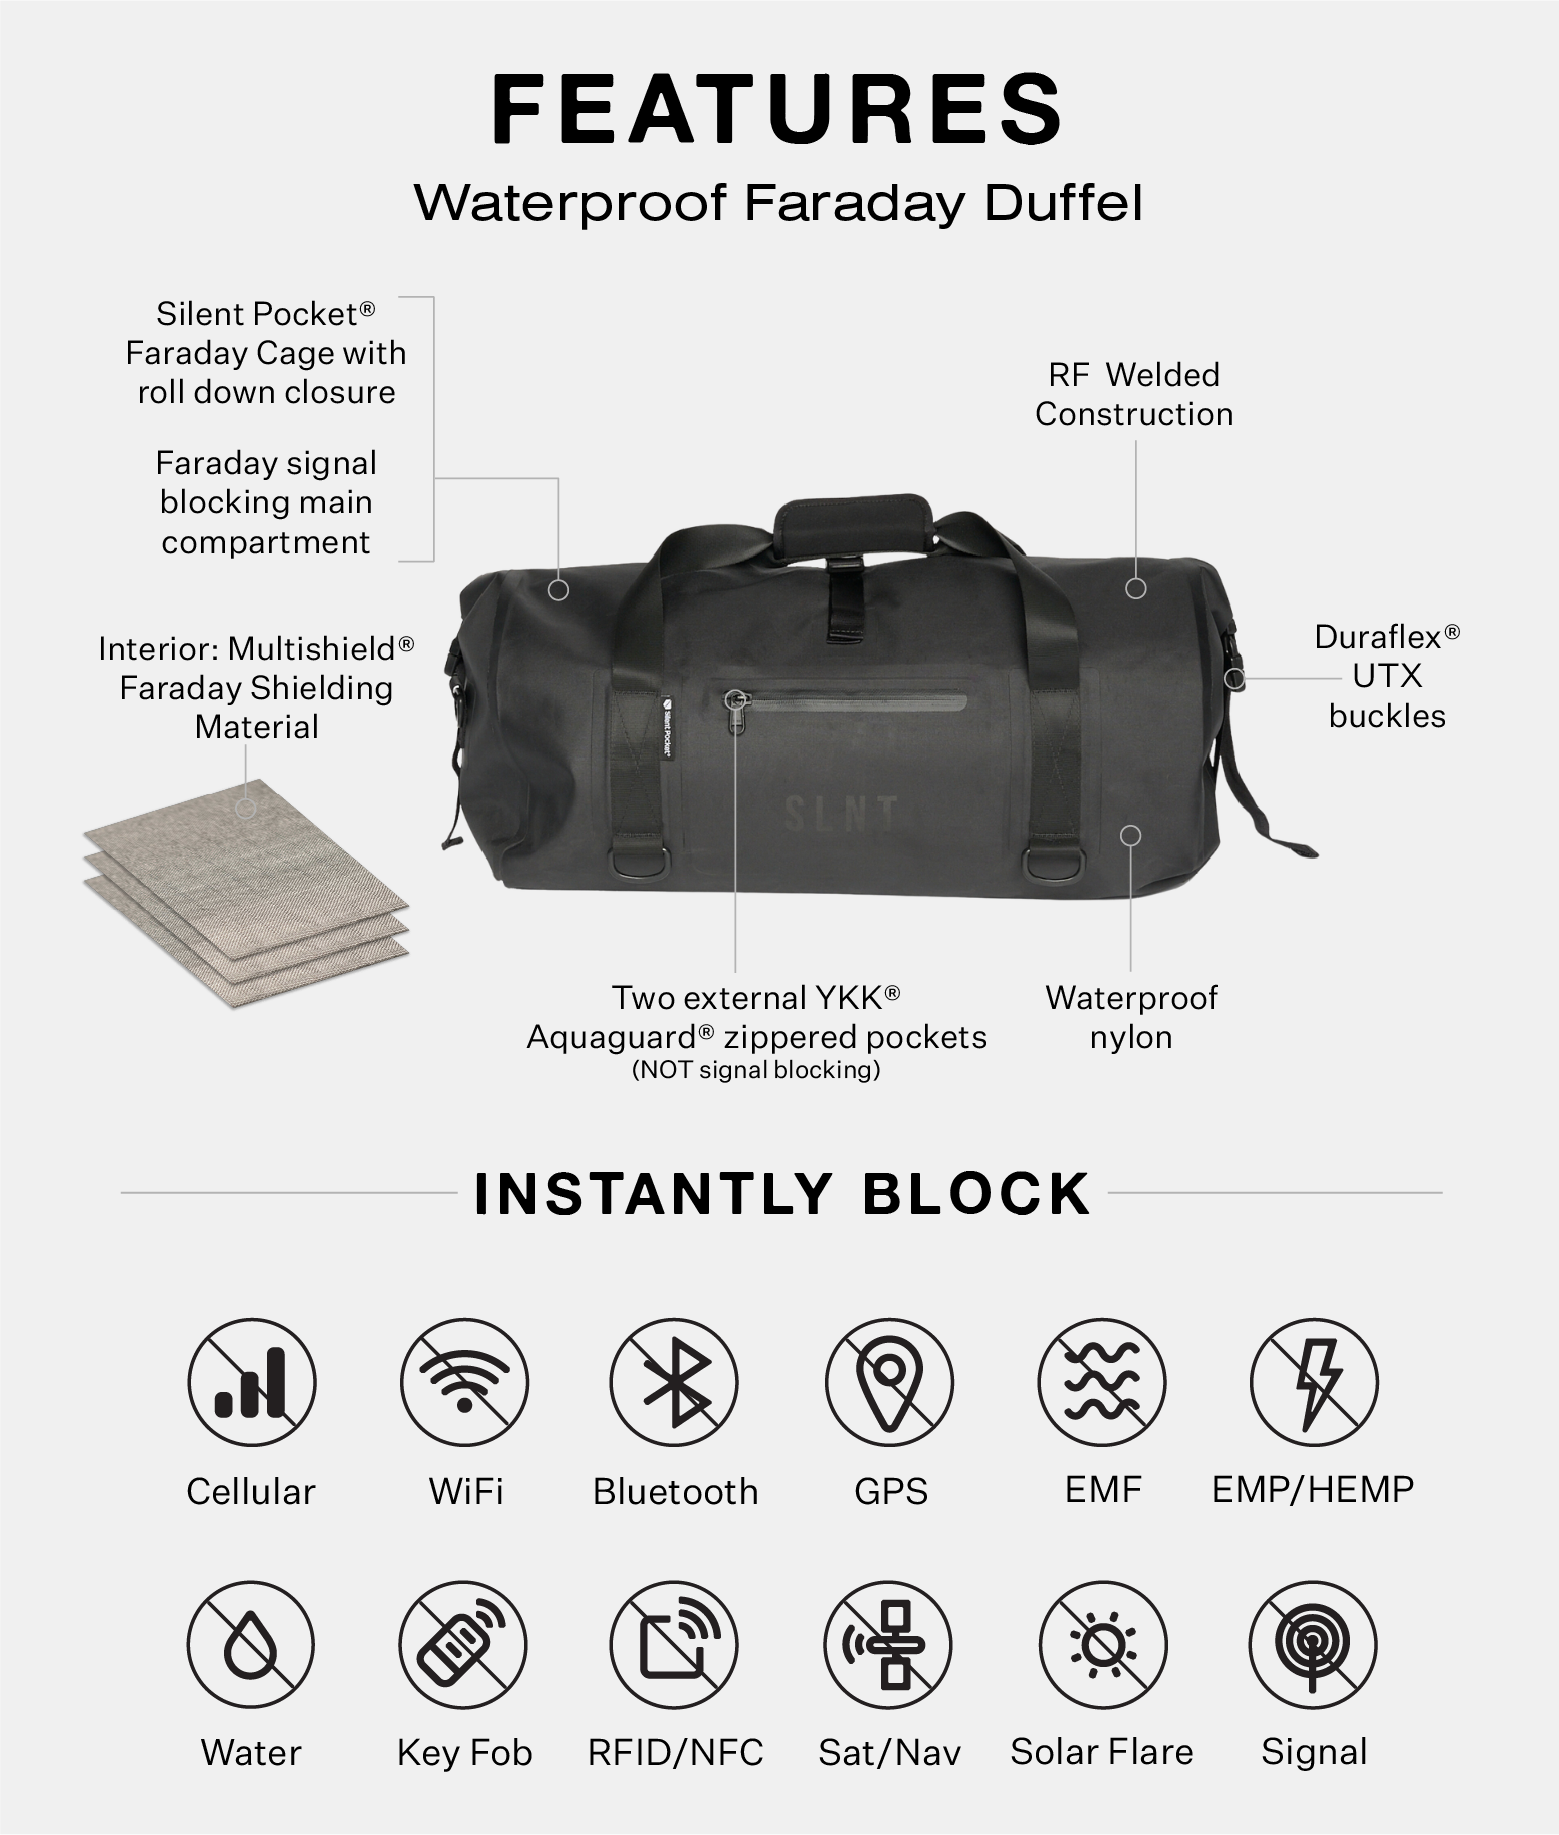 Waterproof Phone Bag - SLNT®